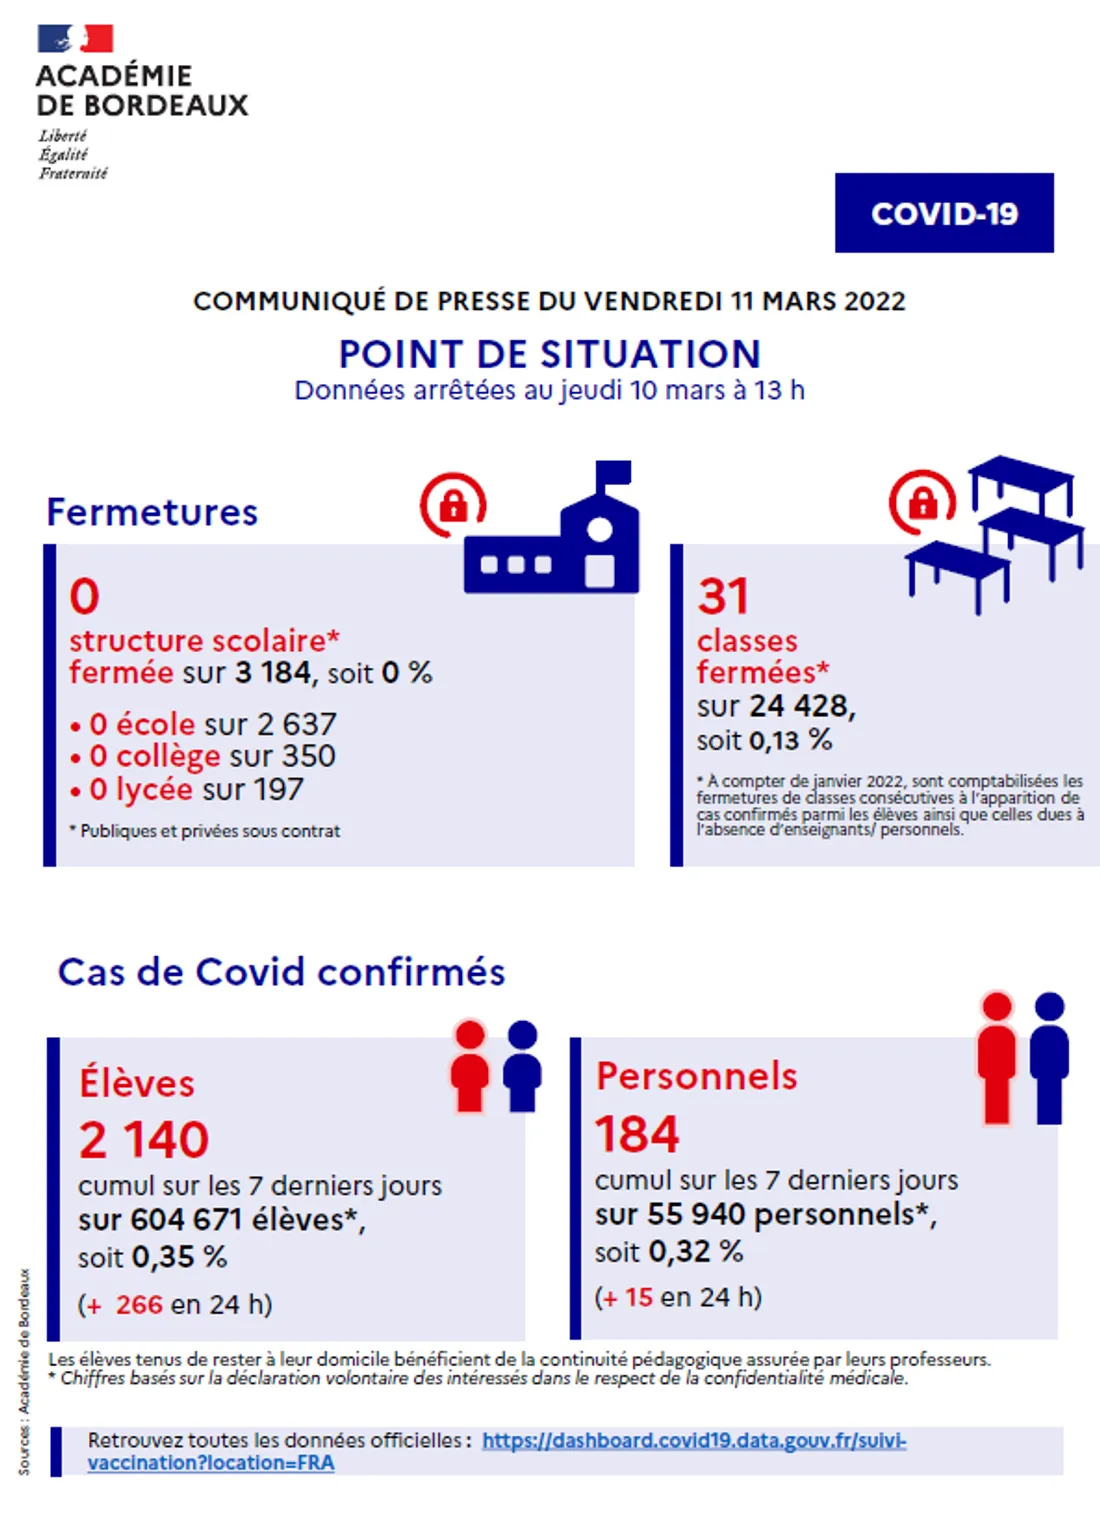 Communiqué - Point de situation Covid-19 dans l'académie de Bordeaux du 11/03/22